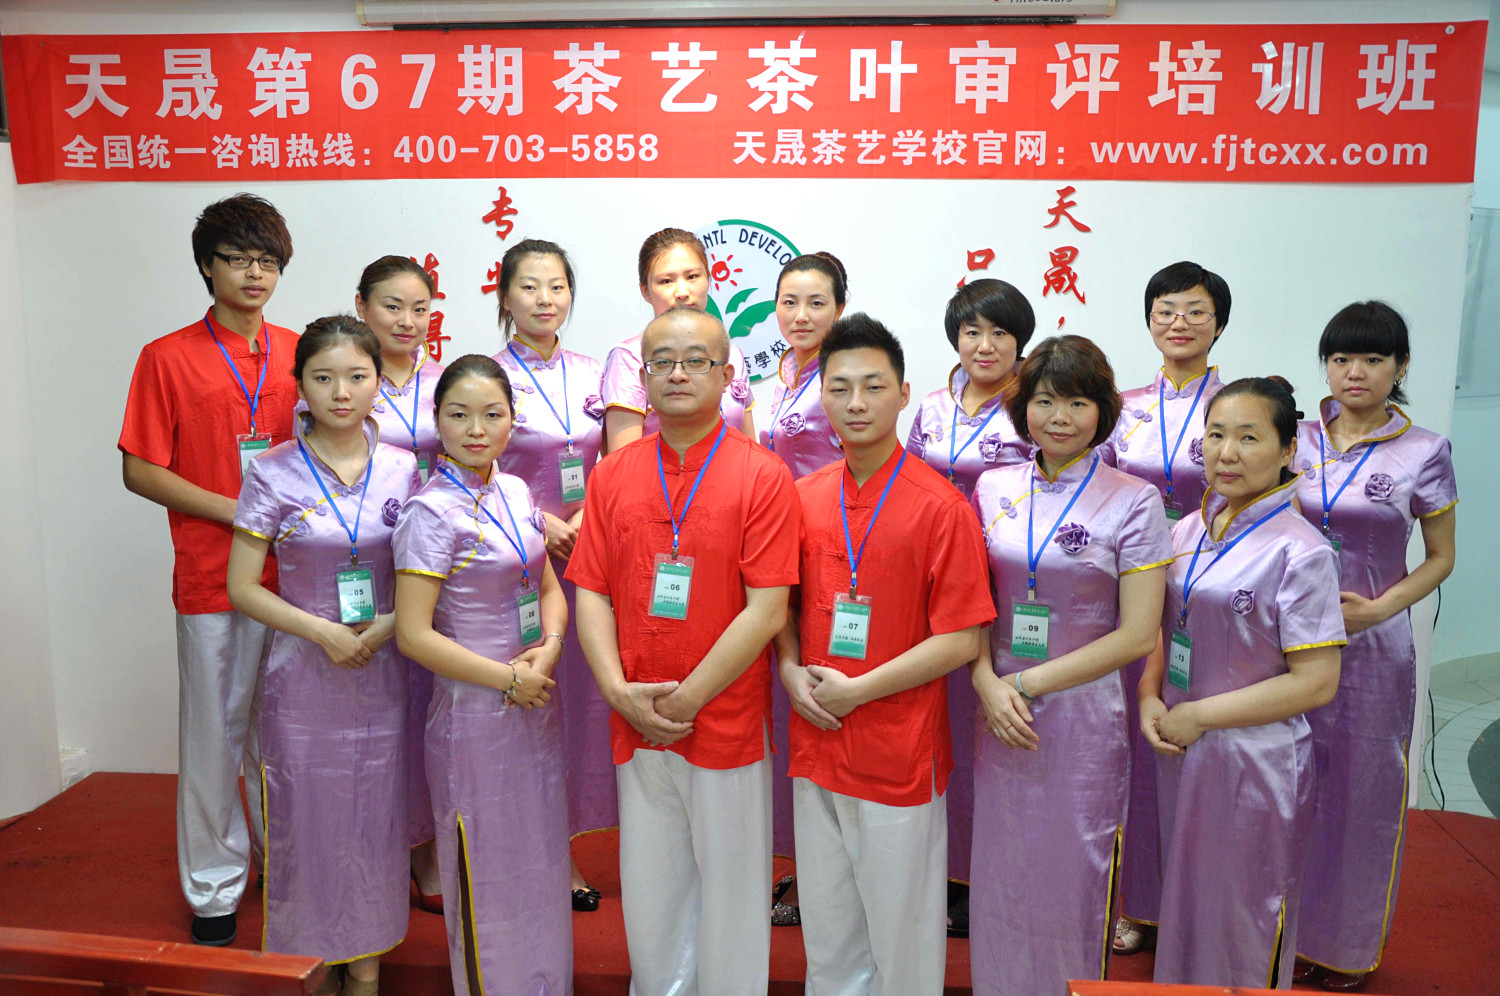 第67期天晟茶艺培训学校中国茶学系统培训班全体学员合照